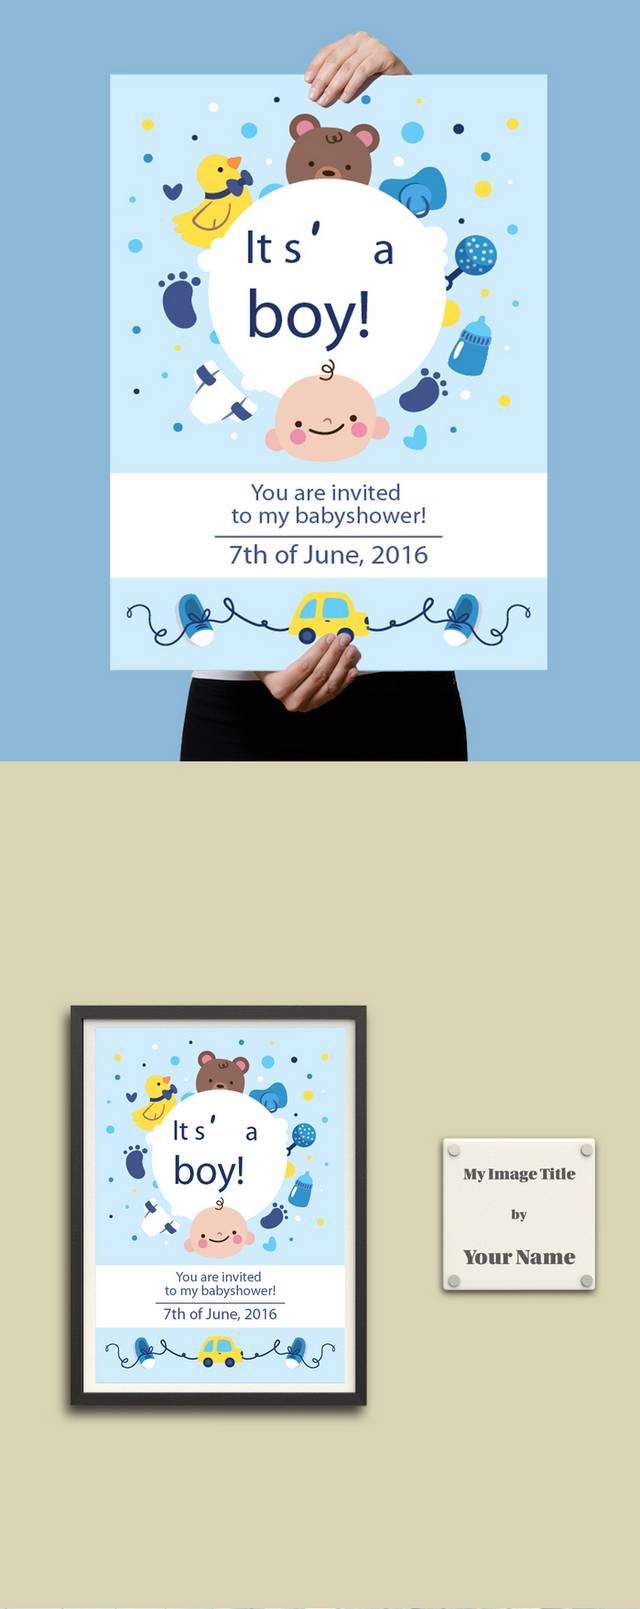 蓝色母婴店儿童宝宝孩子海报